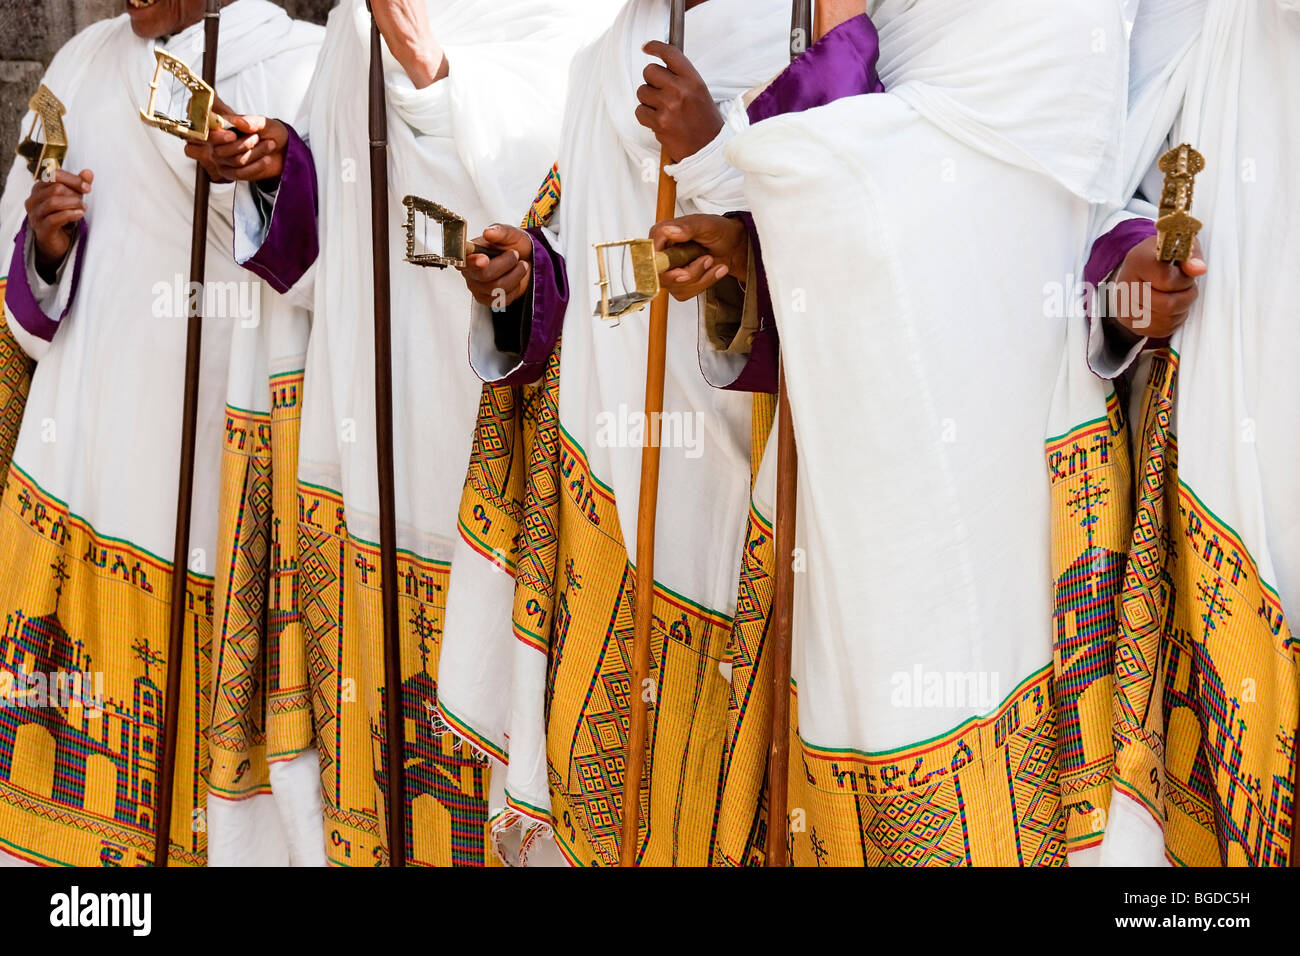 Priests holding sistrums, Timket (celebration of Epithany, Christian Orthodox Church) Addis Ababa, Ethiopia Stock Photo